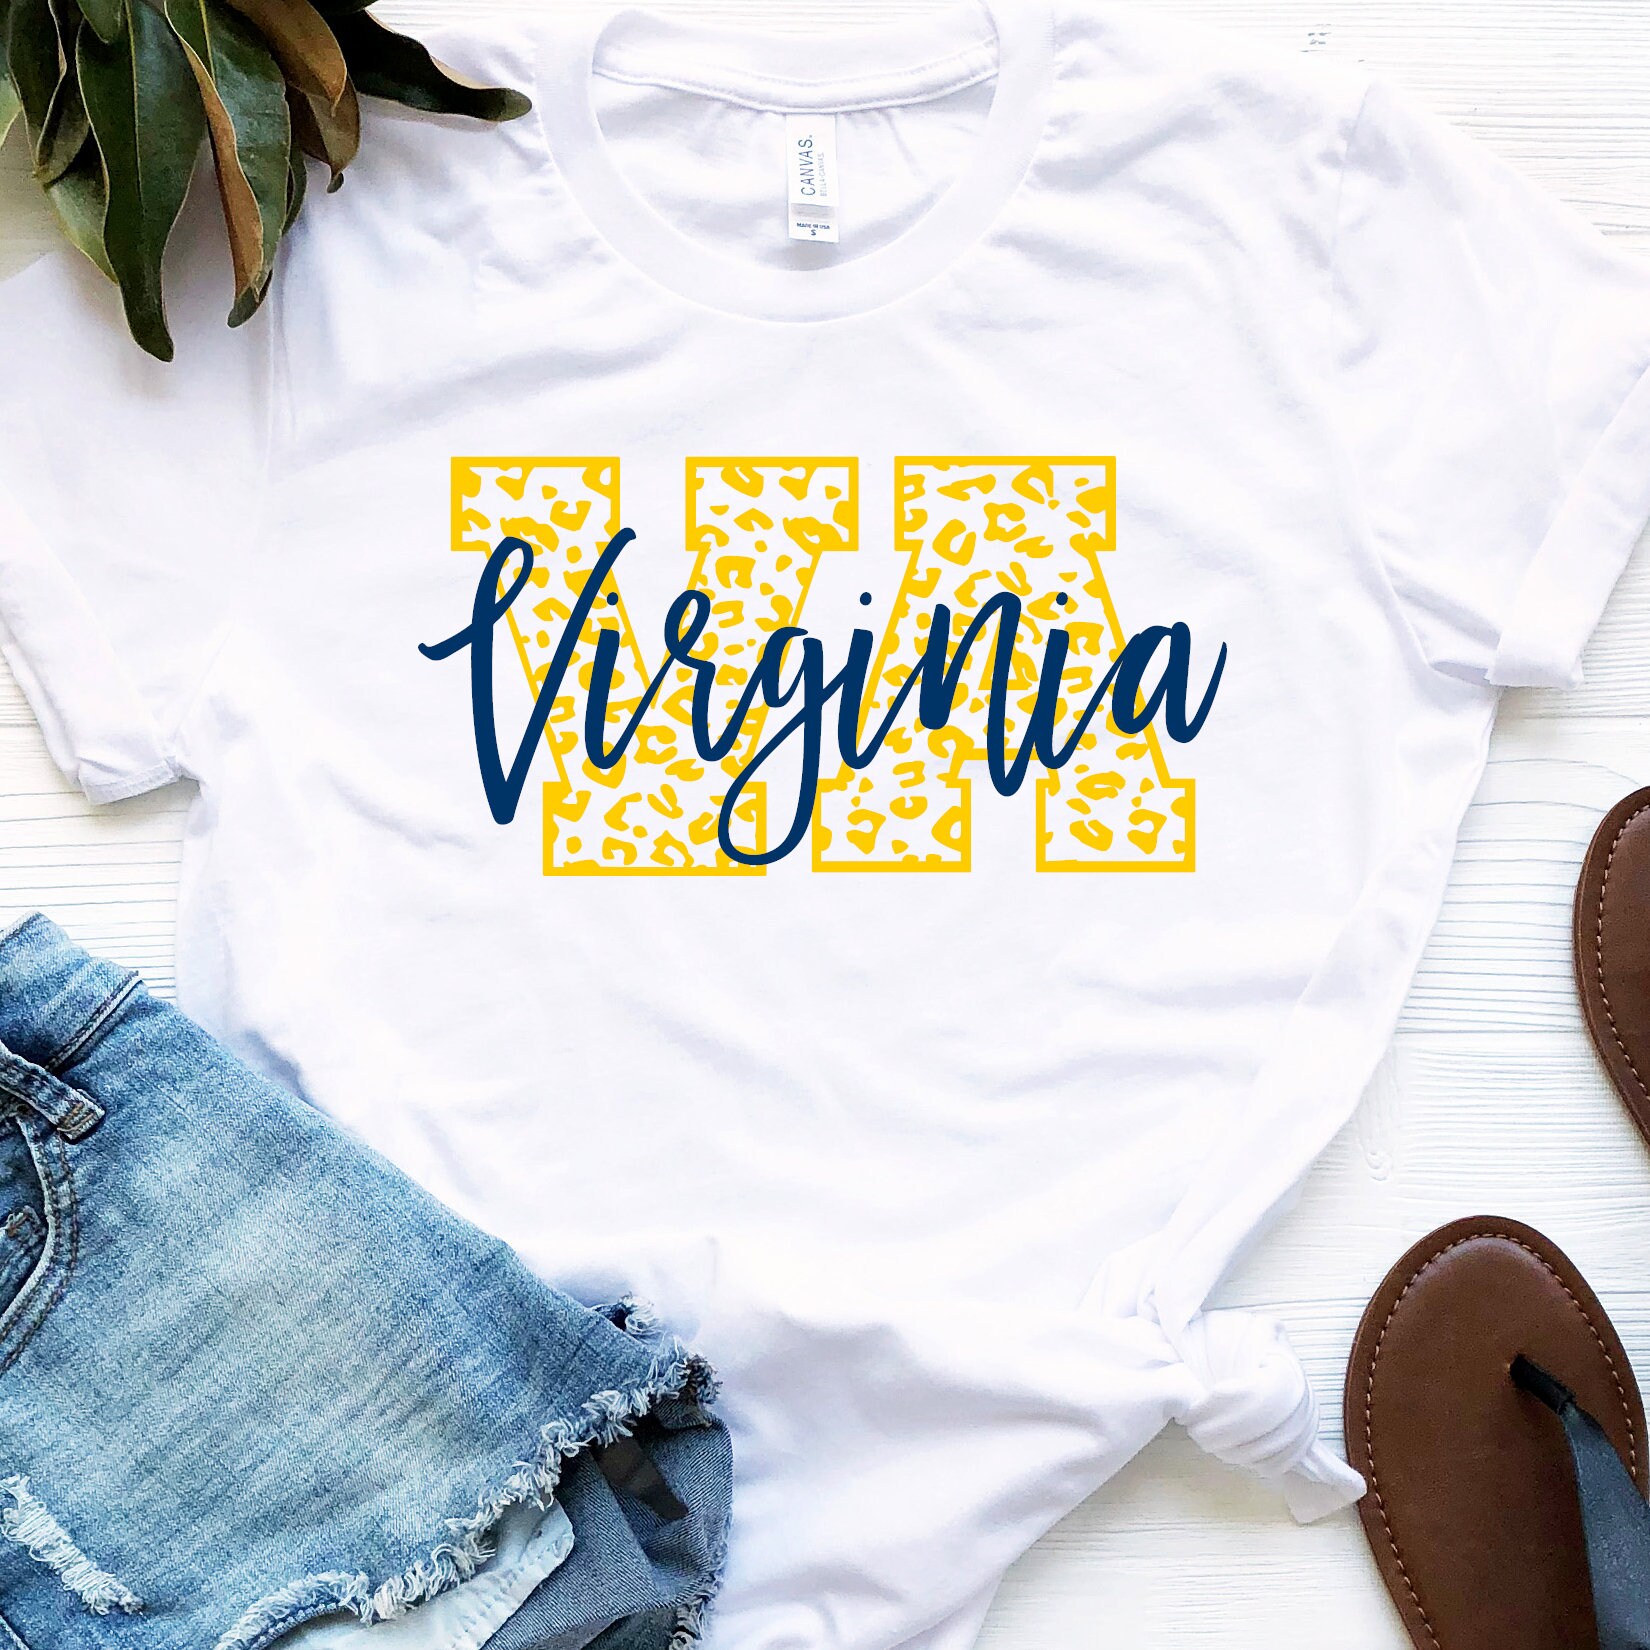 Virginia Shirt, Adult Size Tee, Men, Women, Teen, College Football Shirt